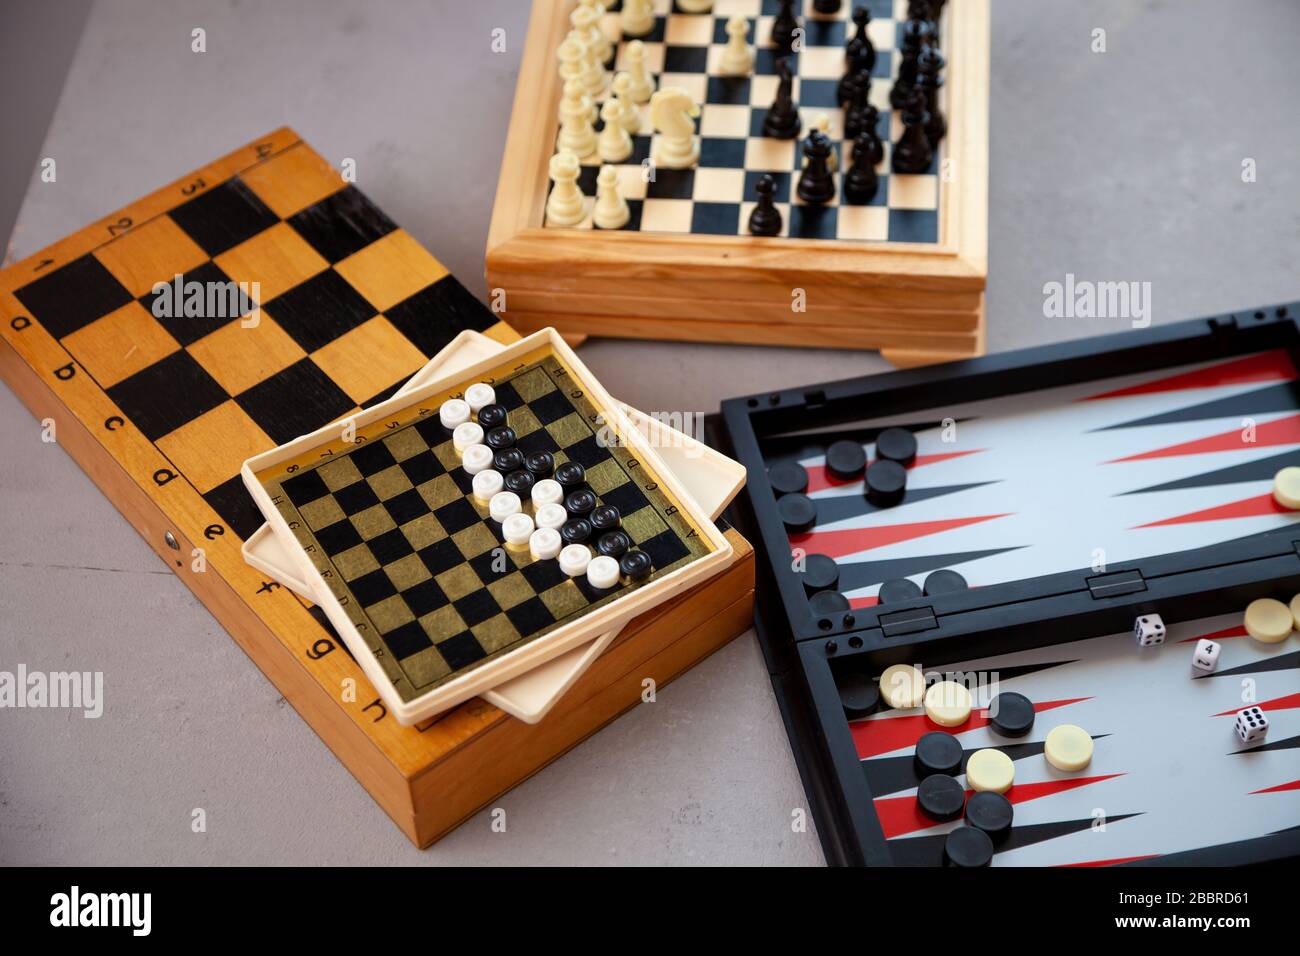 Brettspiele auf dem Tisch. Schach, Backgammon, Schachspieler. Für das Spiel  sind Bretter ausgelegt. Spielen, Spaß zu Hause haben. Freizeit, Hobbys  Stockfotografie - Alamy